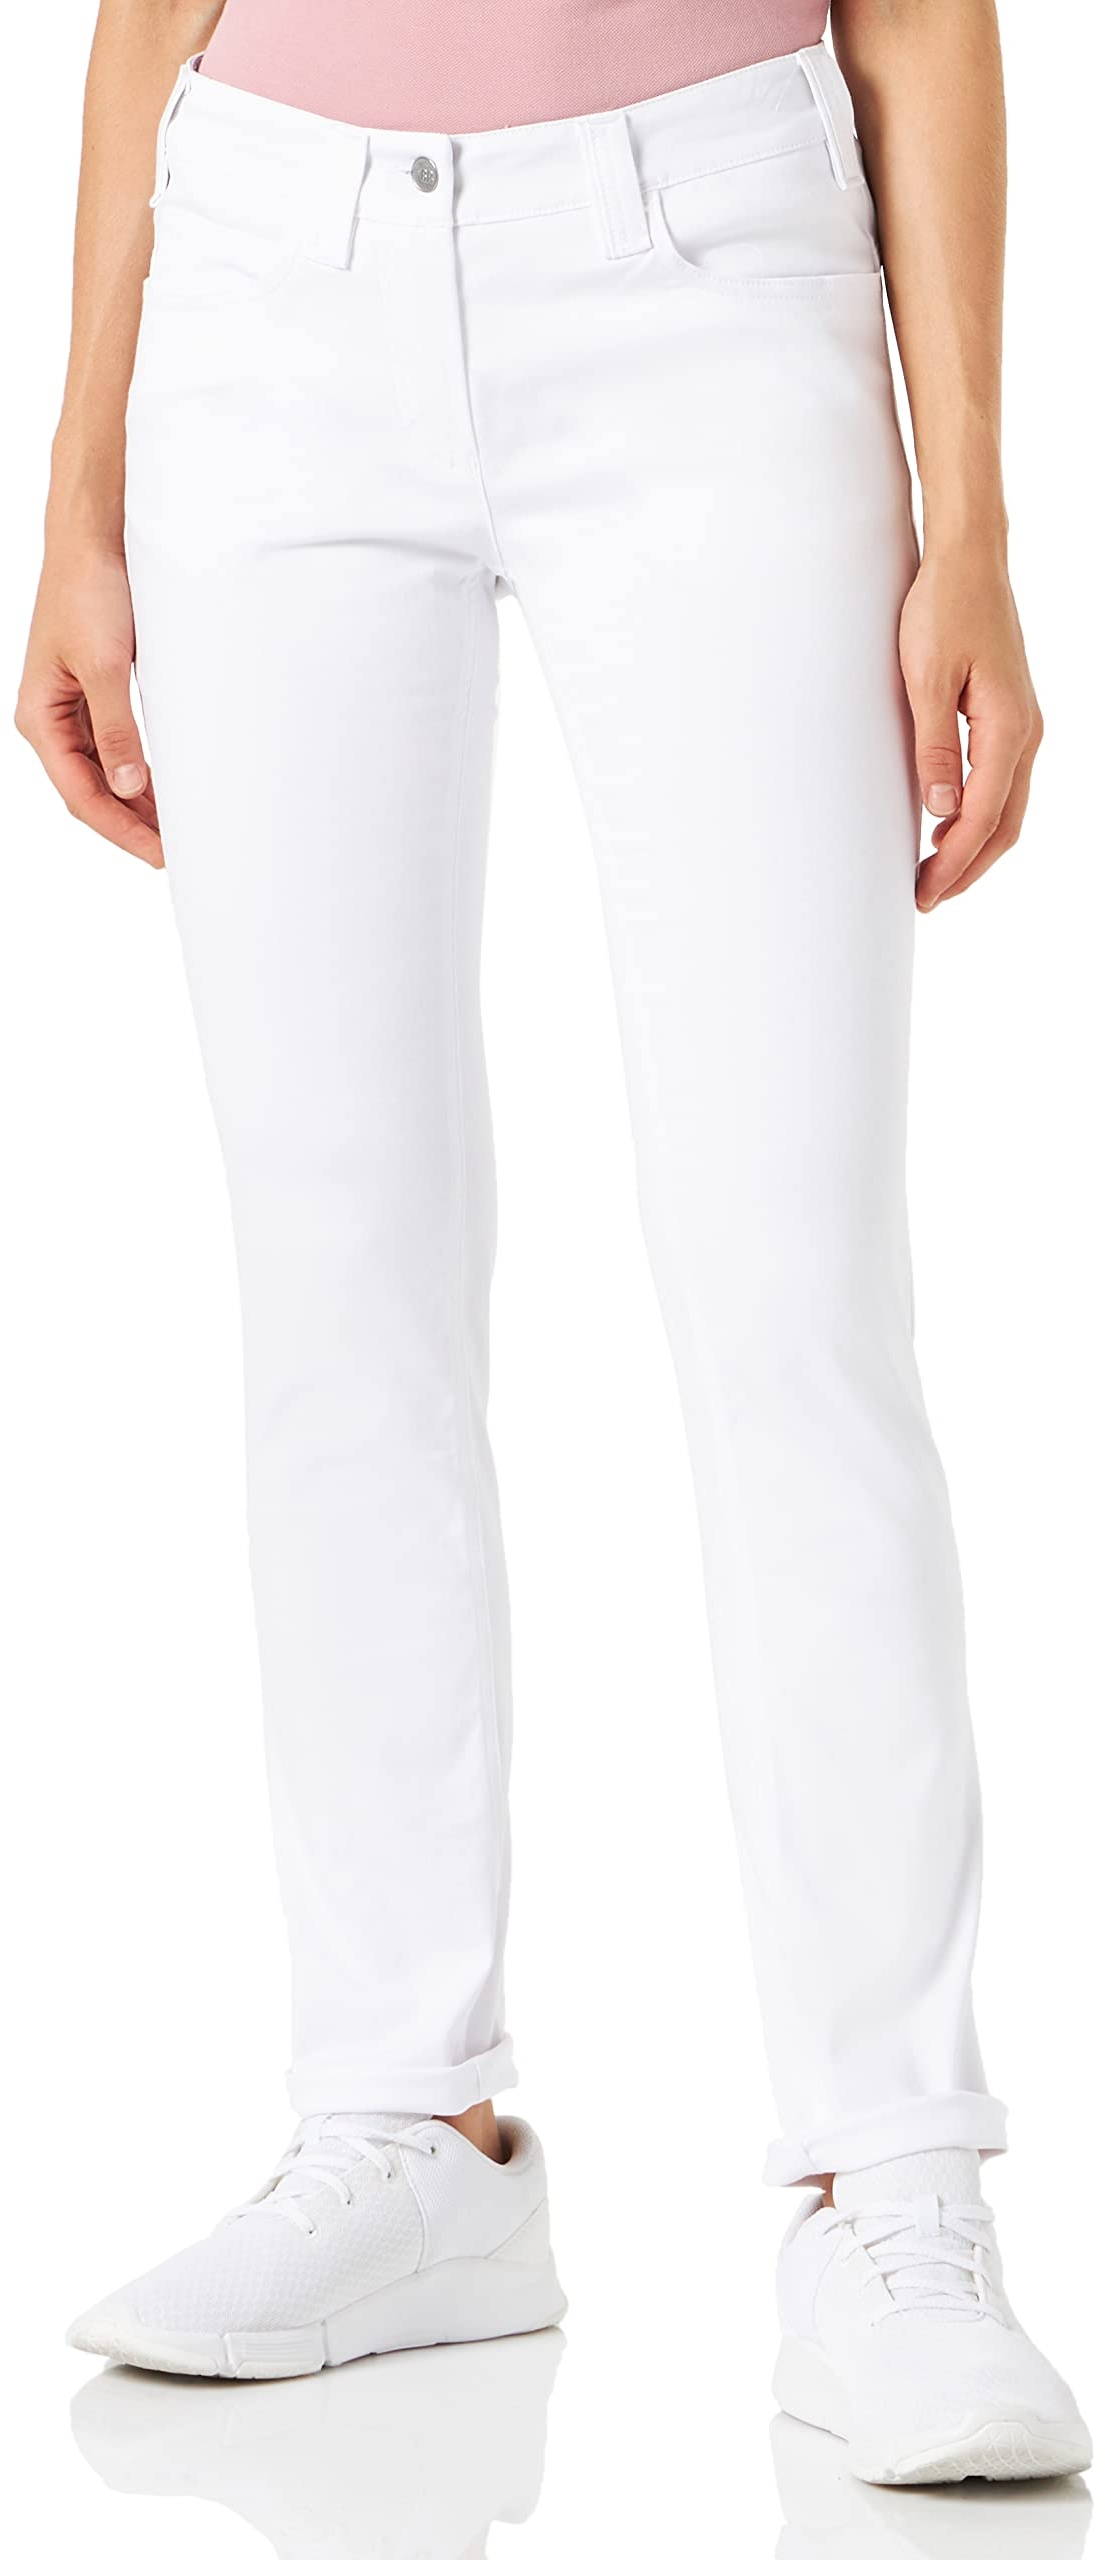 BP 1755-311-0021-27/32 Damen Slim-Fit Jeans - 65% Baumwolle, 30% Polyester, 5% Elastan - Komfort Stretch - Farbe Weiß - Größe 27/32